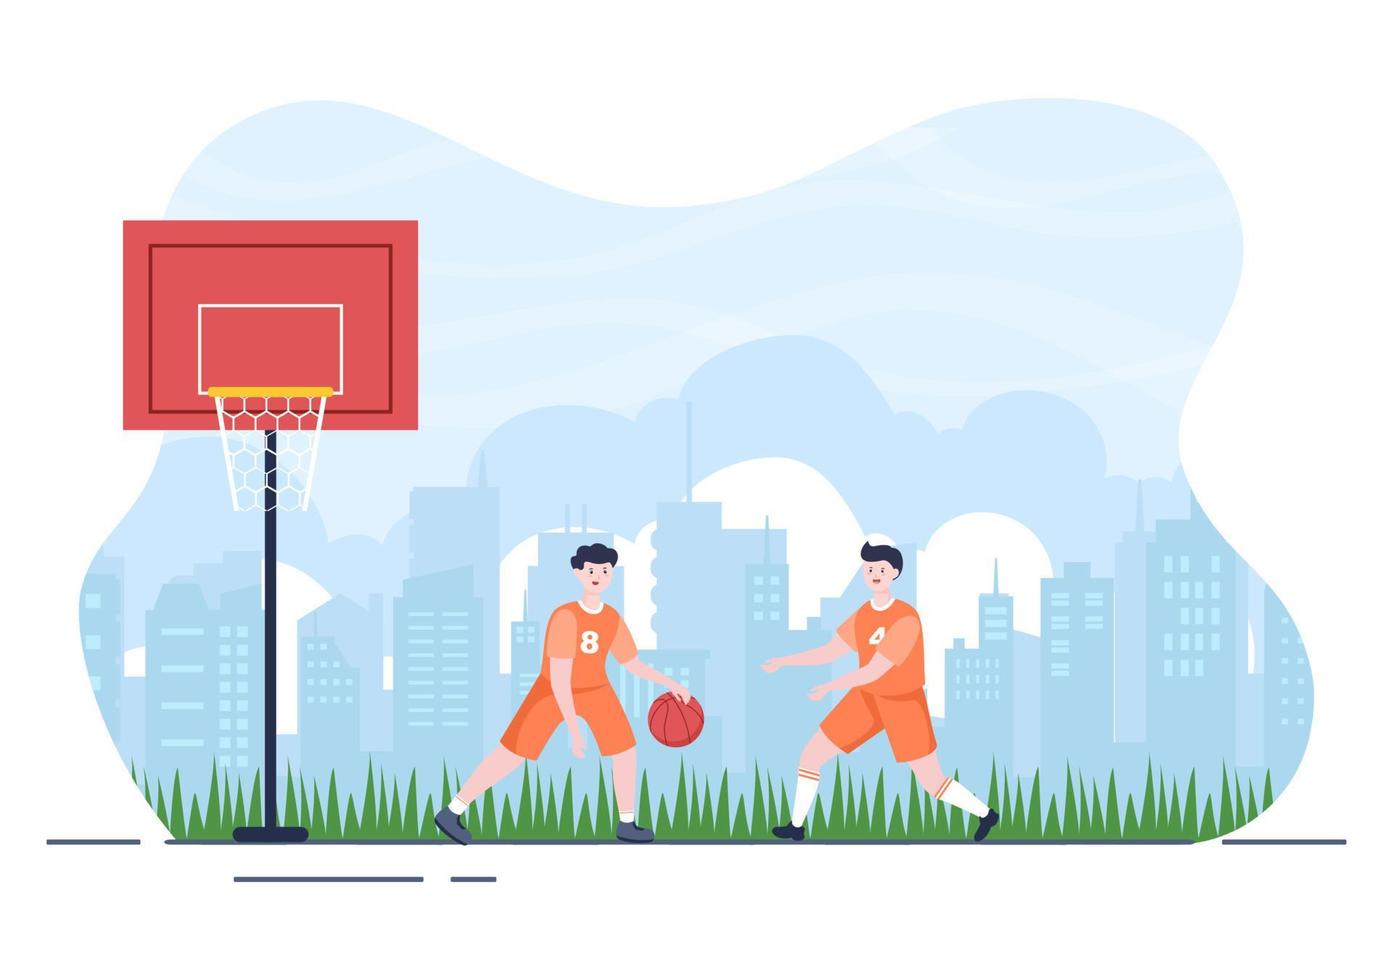 glad ung man spelar basket platt designillustration klädd i korguniform på utomhusbanan för bakgrund, affisch eller banderoll vektor